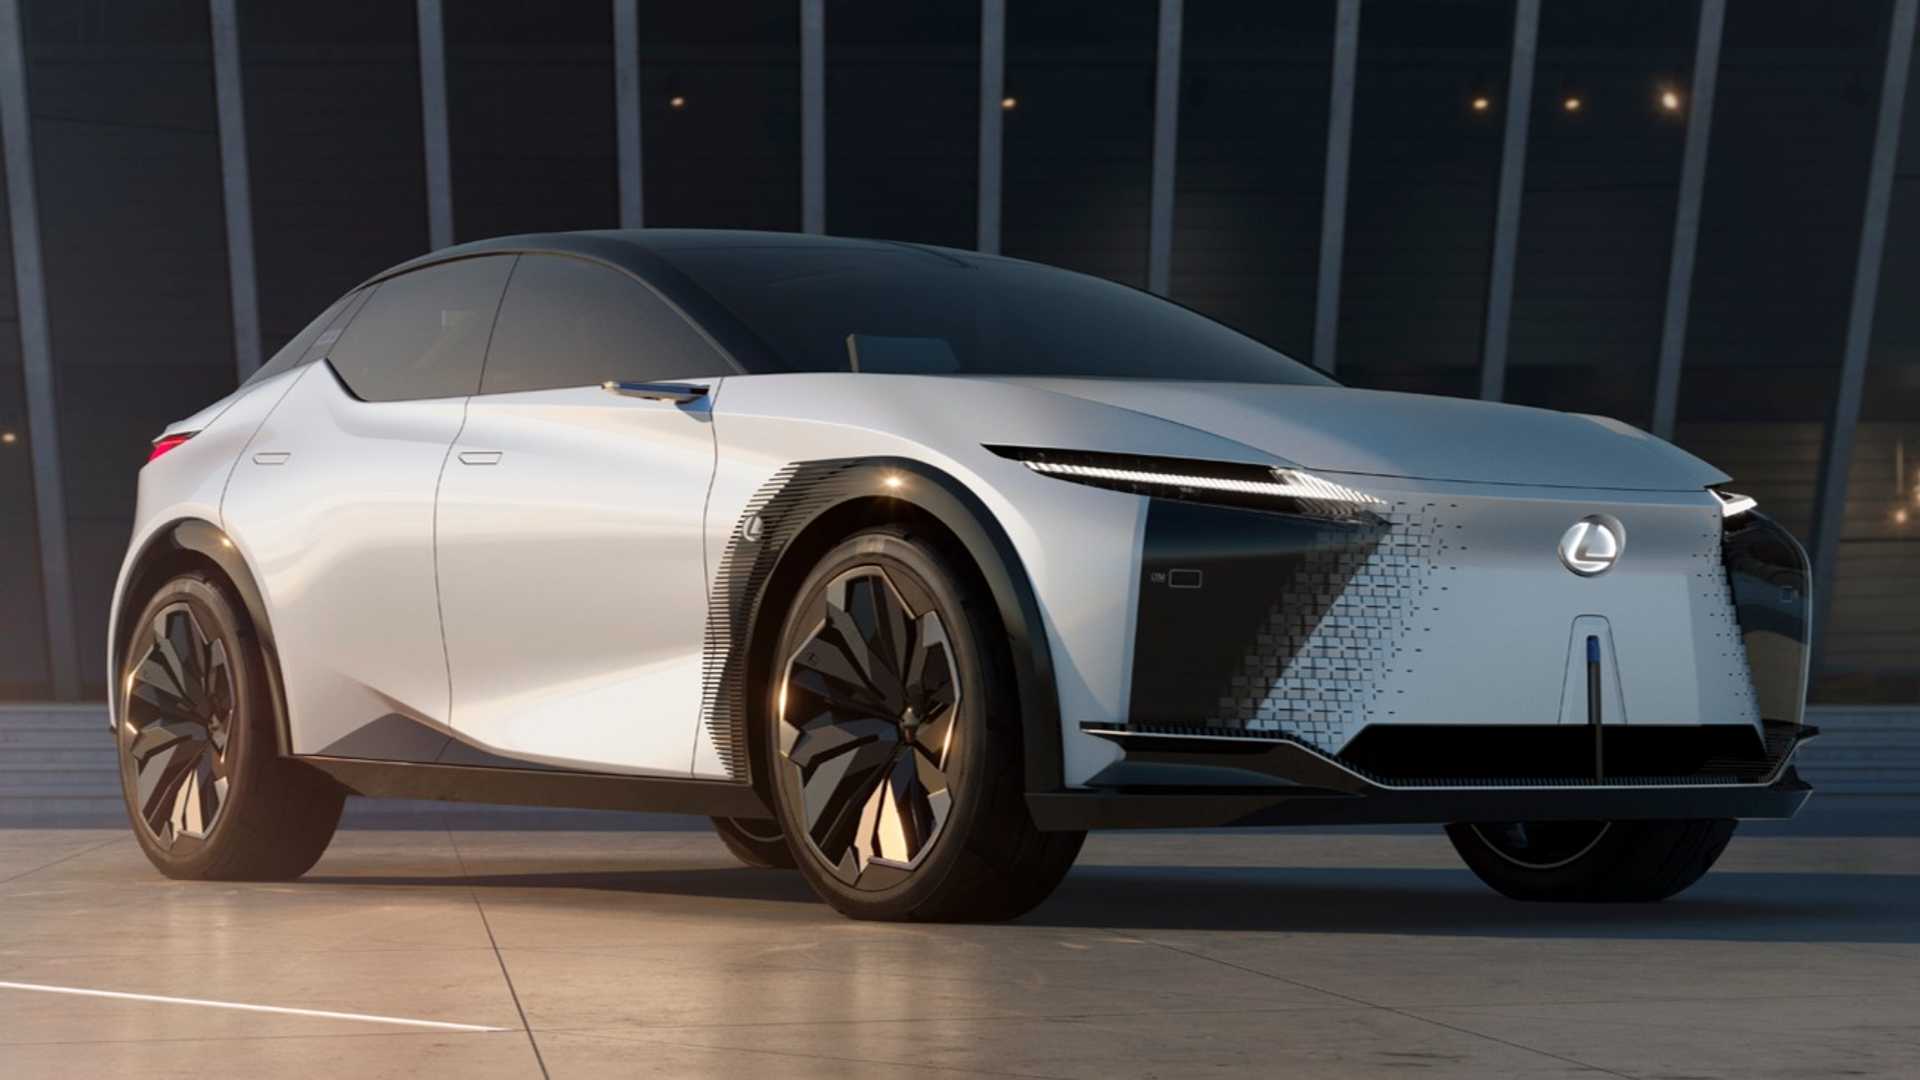 نمای سه چهارم خودروی مفهومی و برقی لکسوس / Lexus LF-Z Electrified Concept EV سفید رنگ